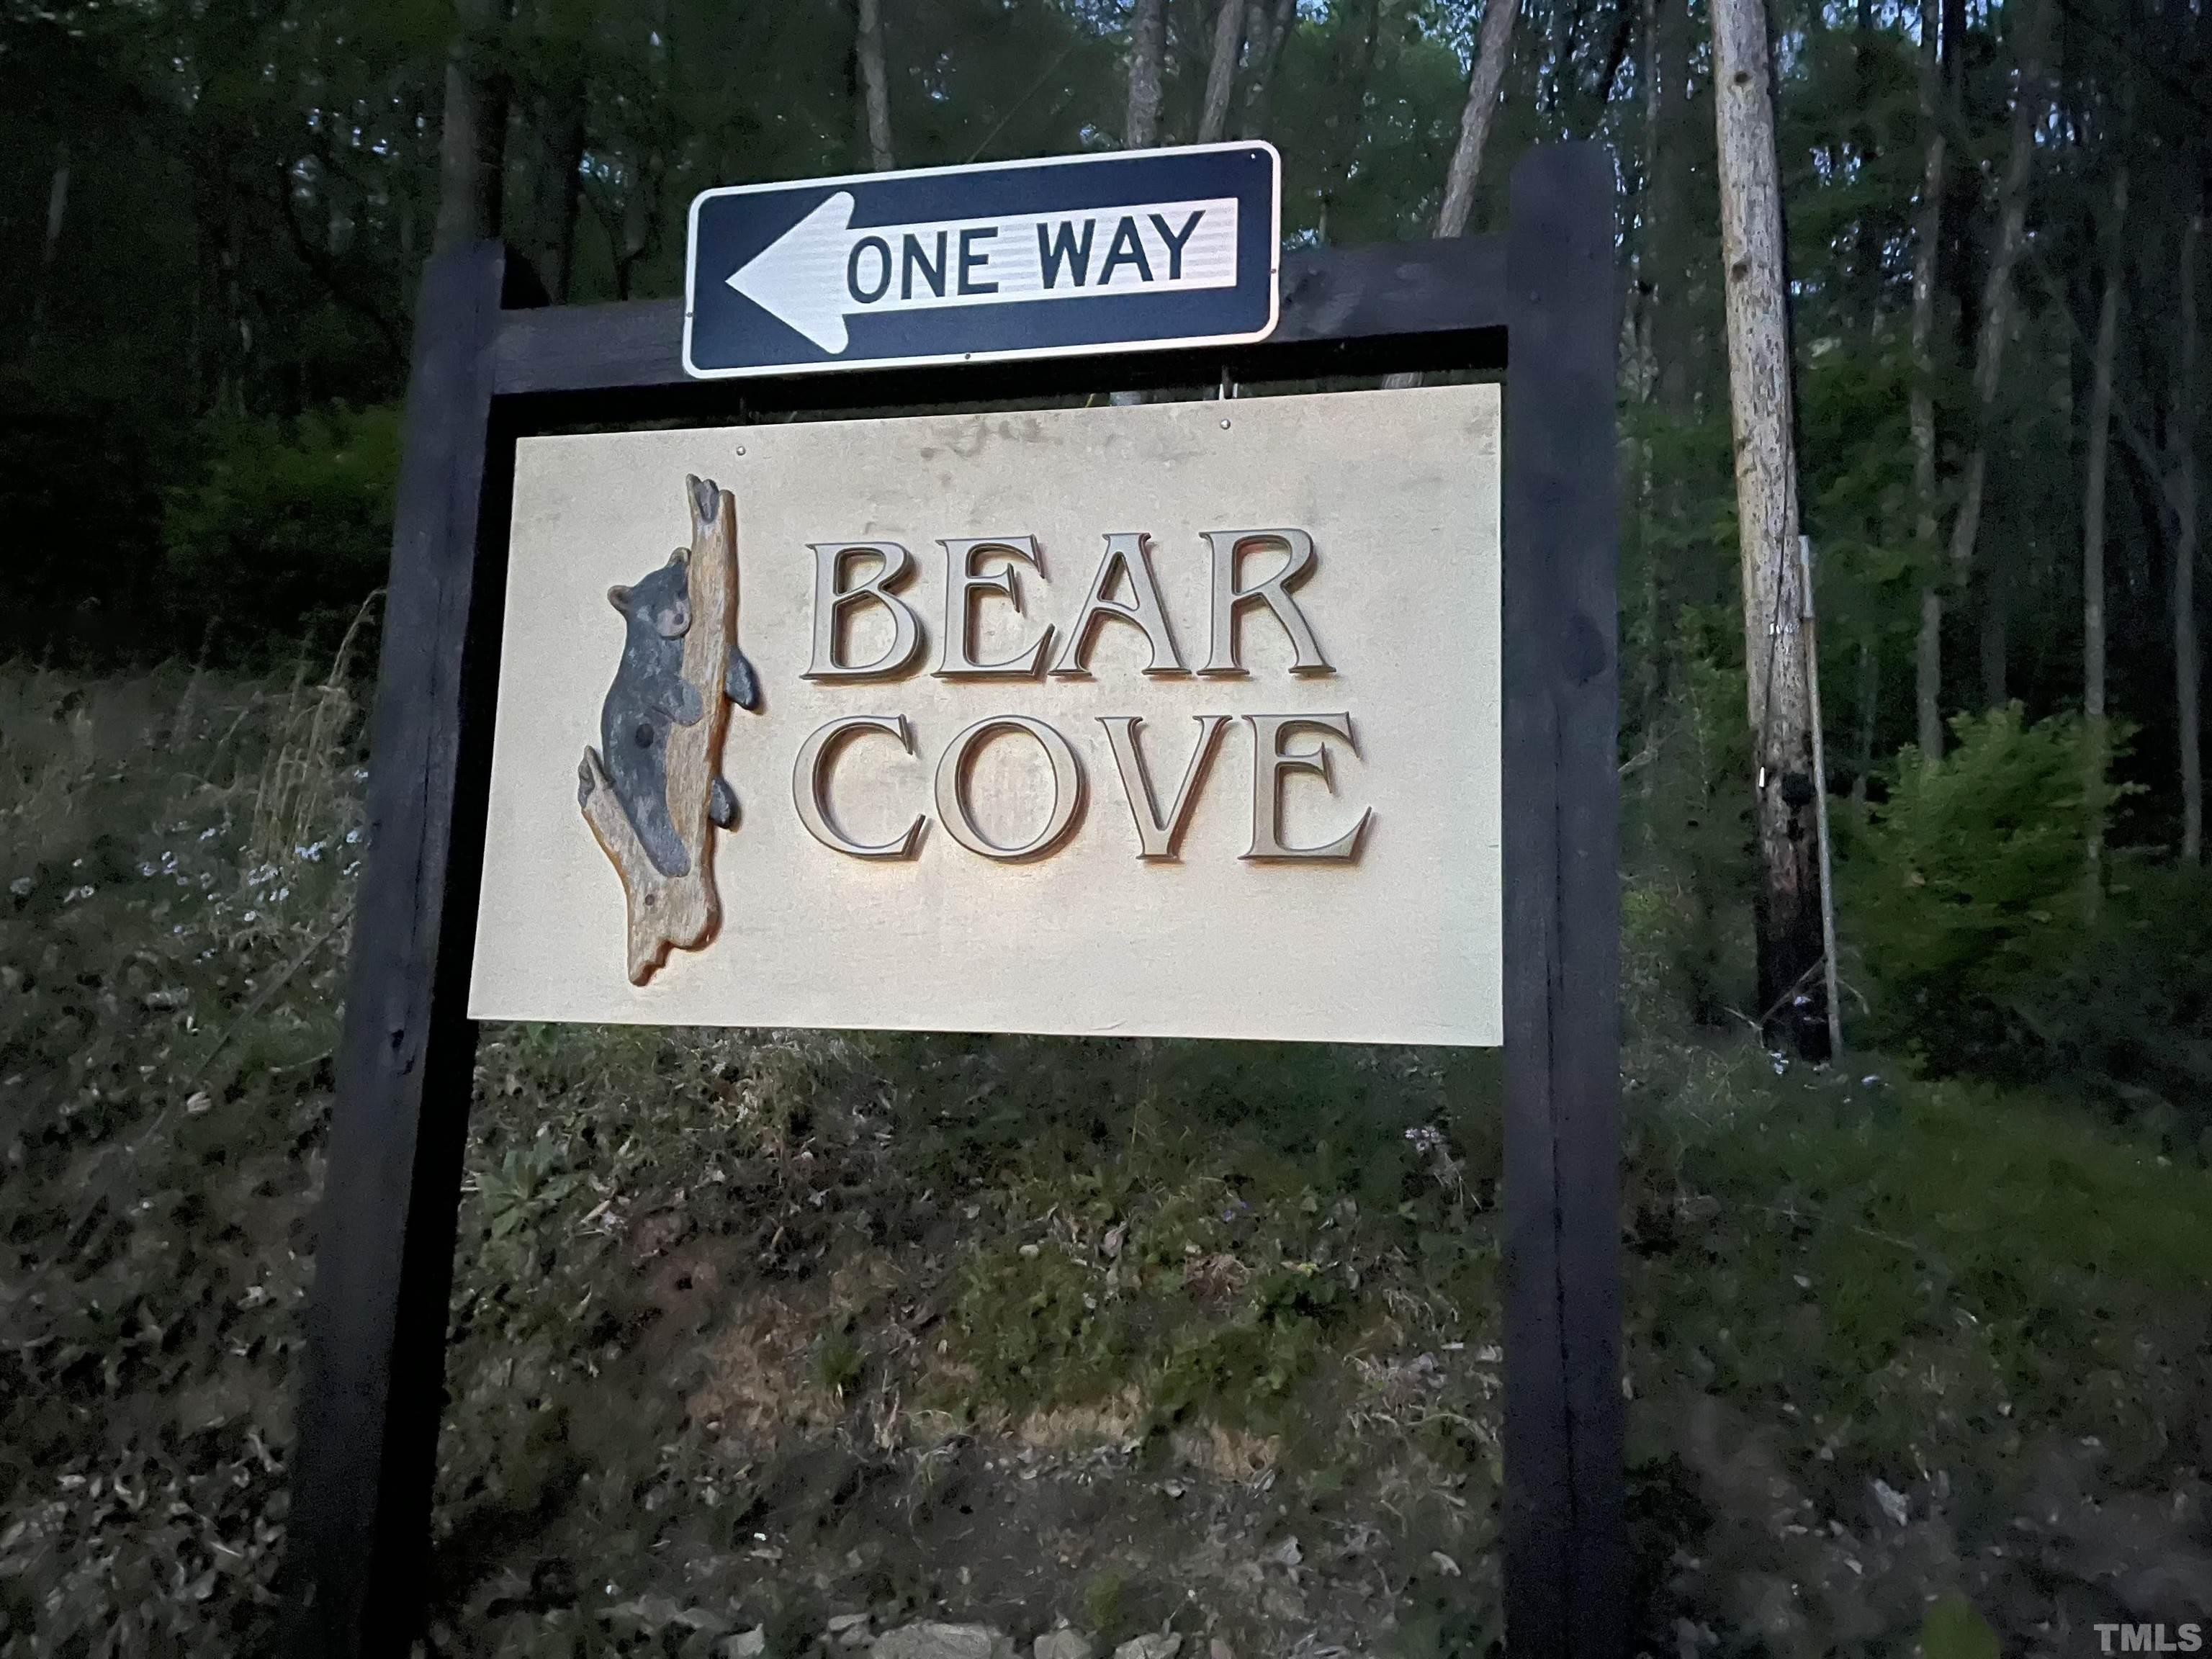 2. Bear Cove